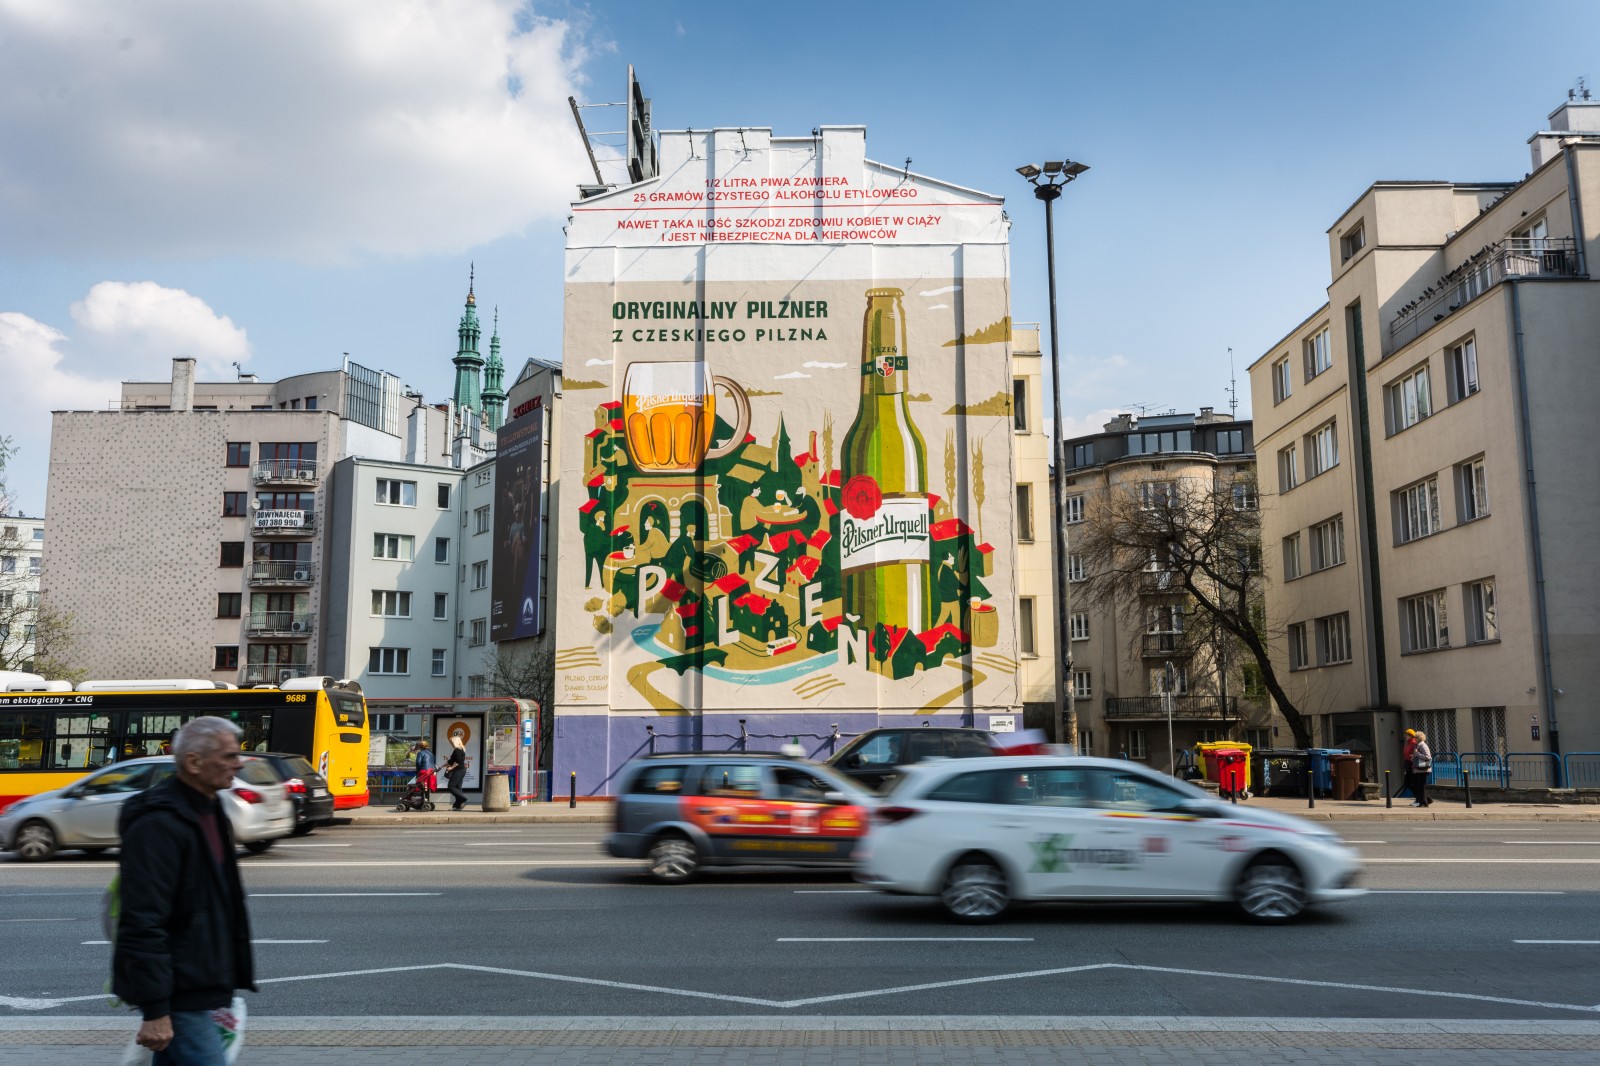 Mural przy metrze Politechnika dla marki Pilsner Urquell | Oryginalny pilzner z czeskiego Pilzna | Portfolio